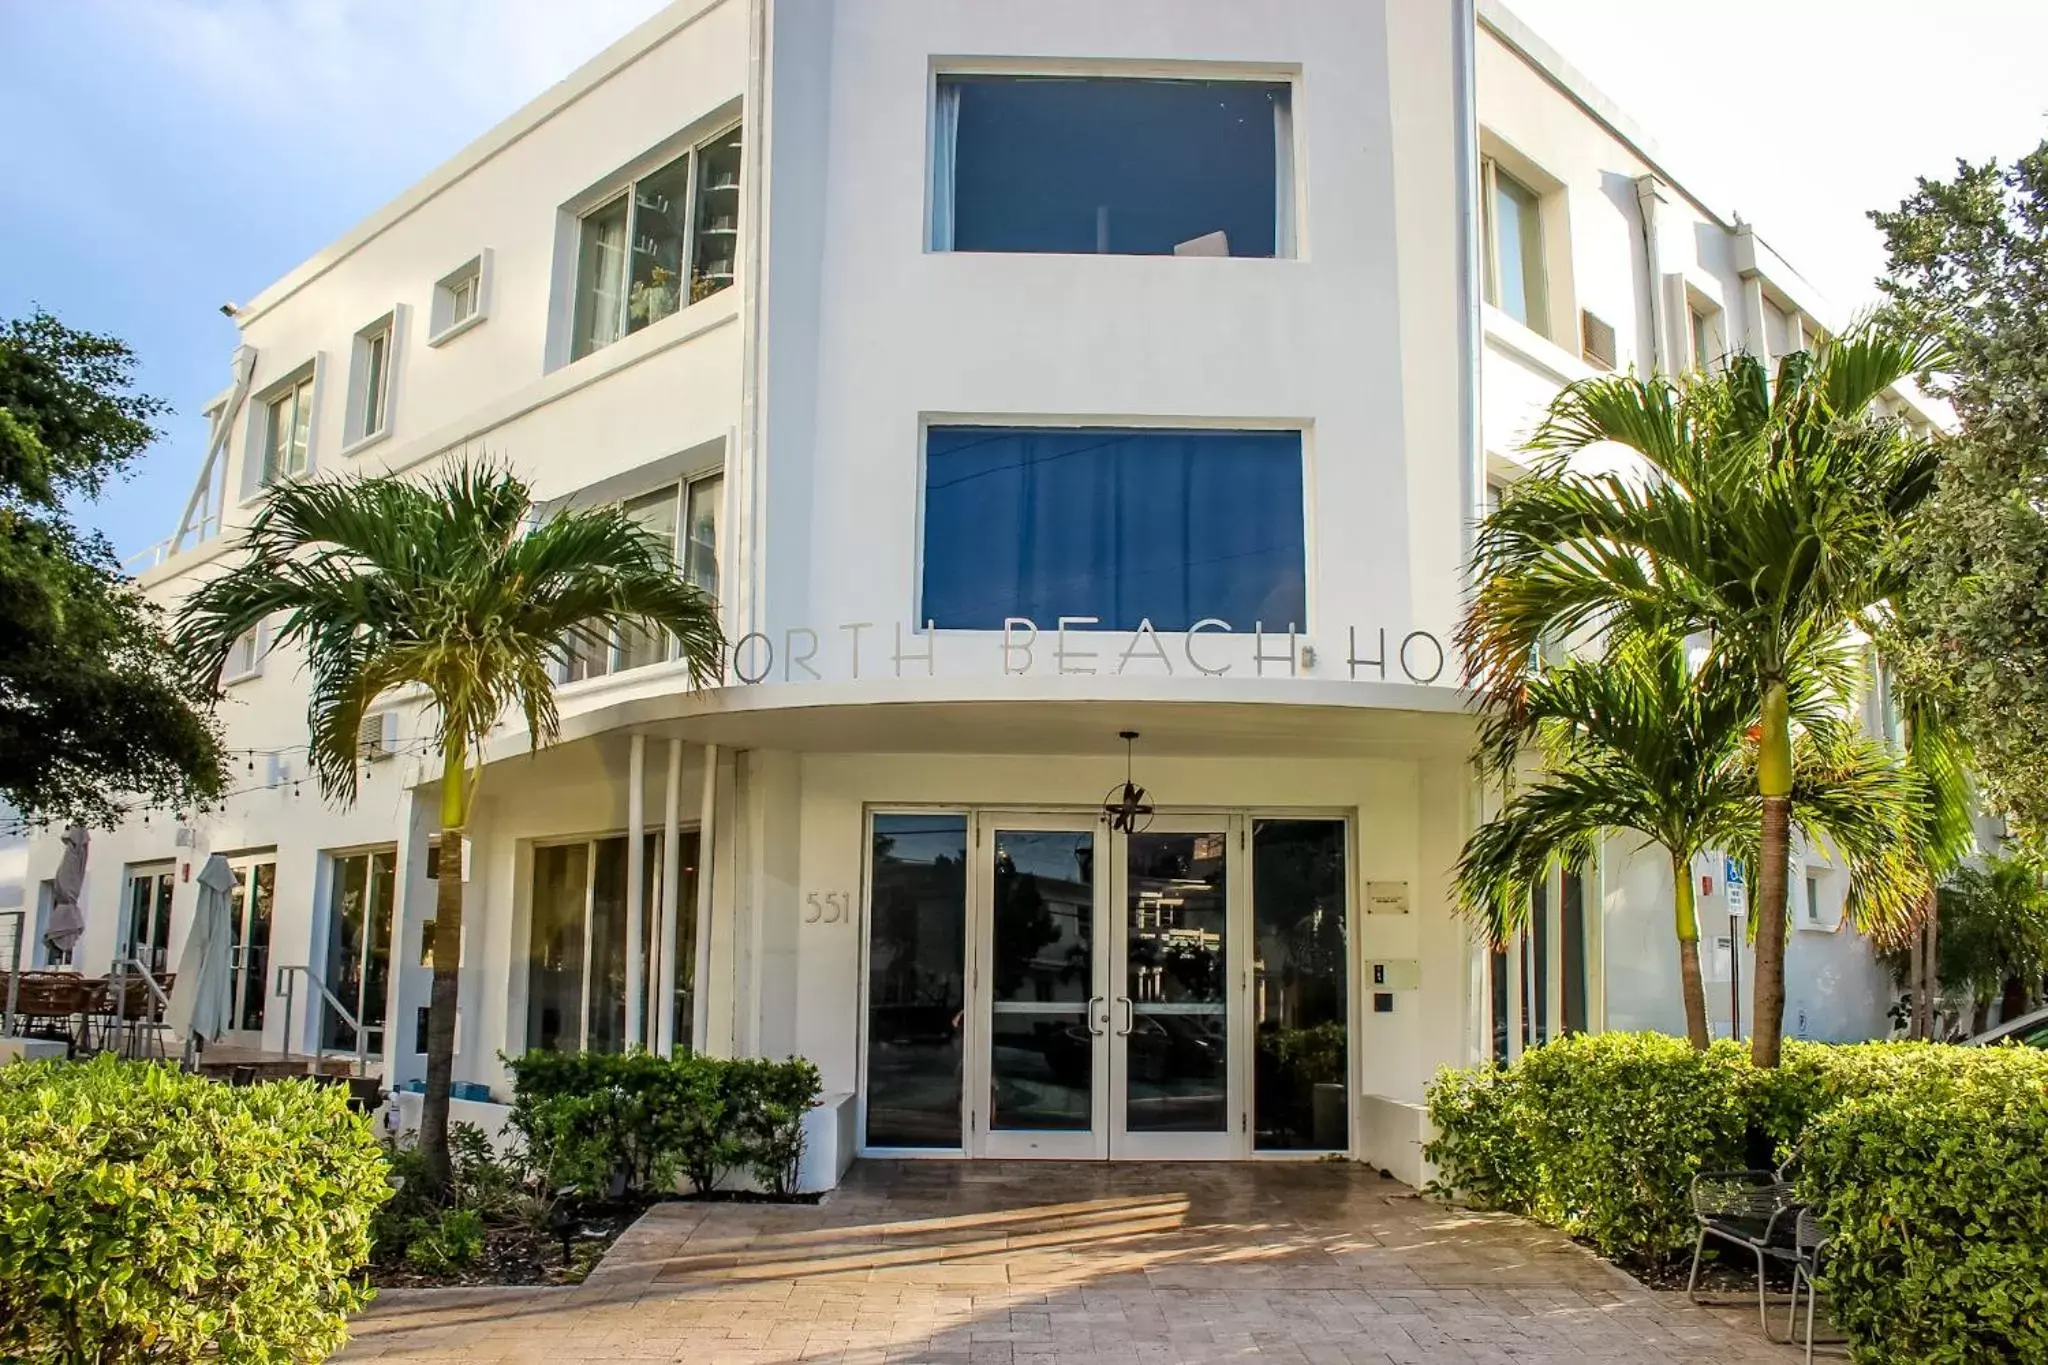 Facade/entrance, Property Building in North Beach Hotel